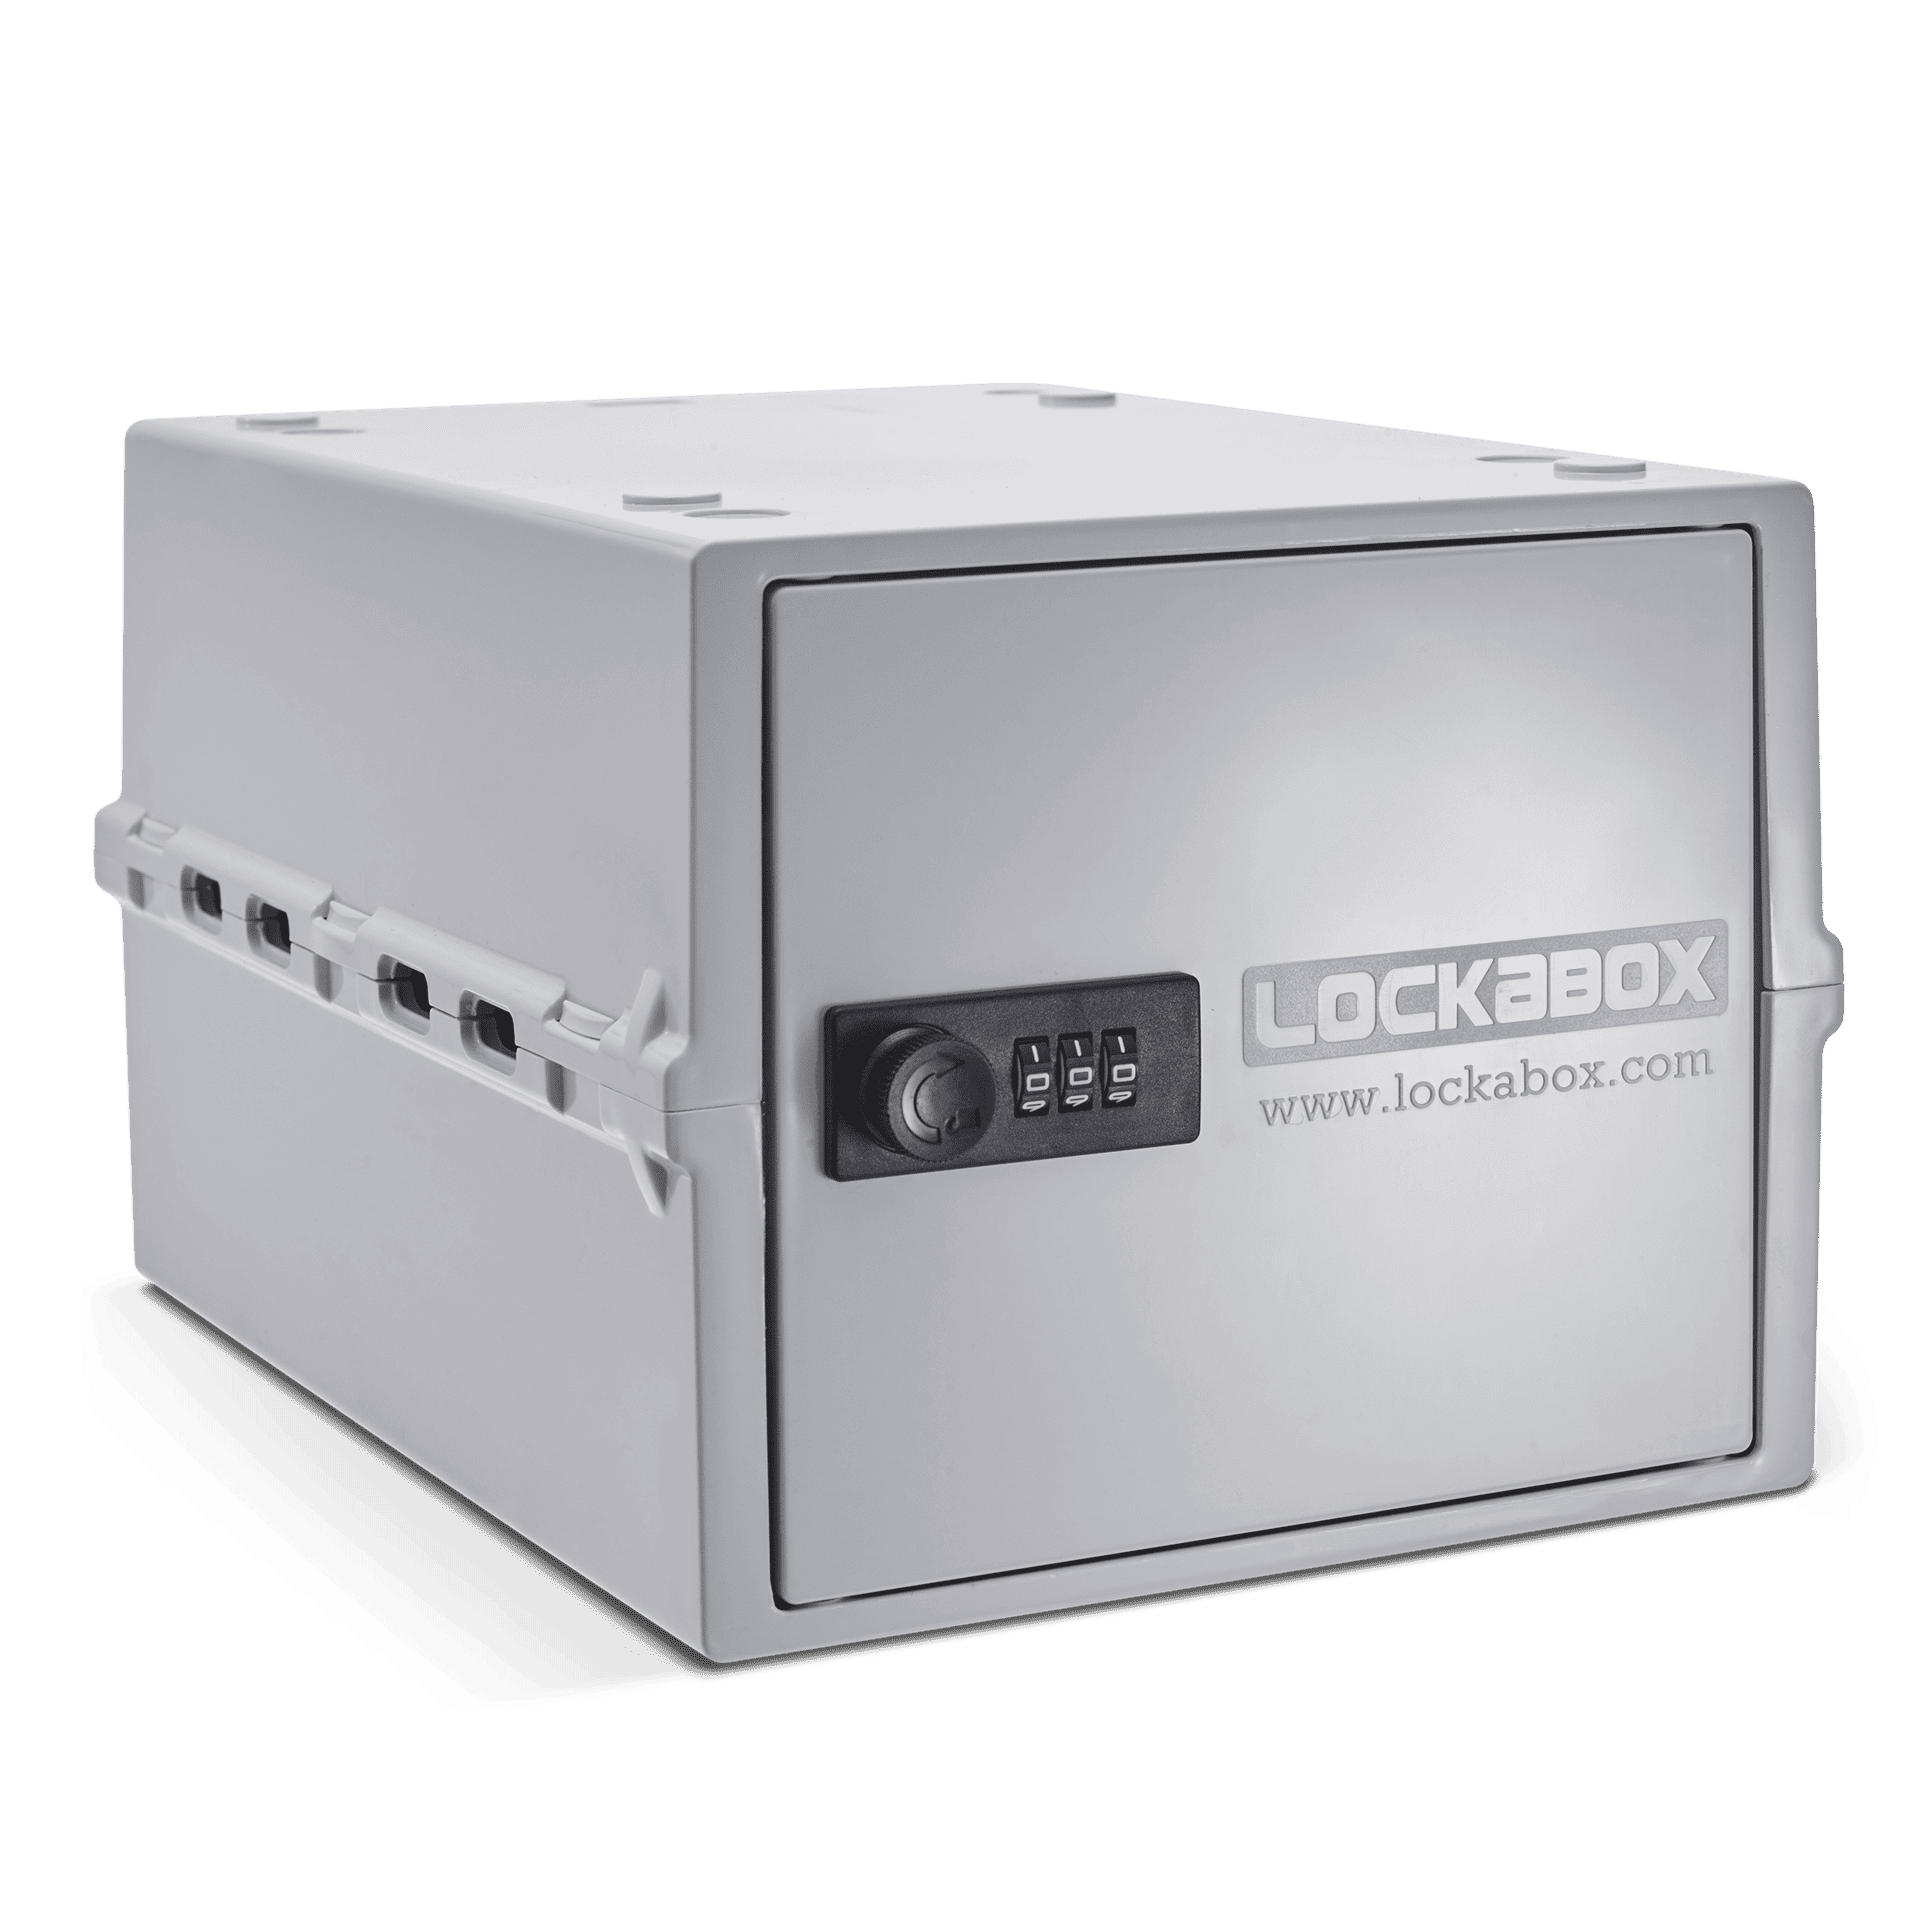 Lockabox One Opal 2160x2160 300dpi